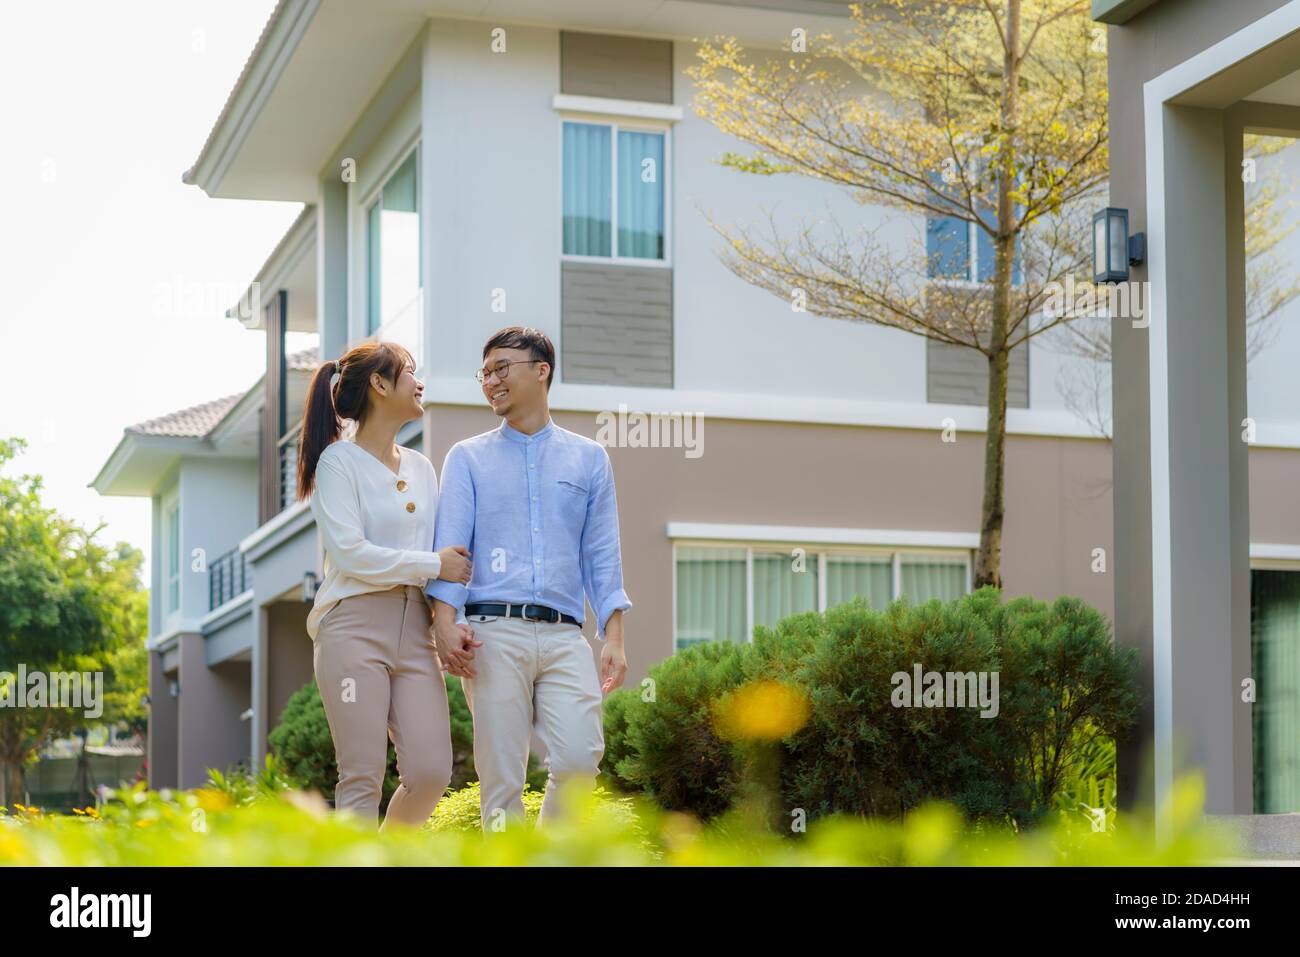 Portrait des asiatischen Paares, das gemeinsam umarmt und vor ihrem neuen Haus glücklich schaut, um neues Leben zu beginnen. Familie, Alter, Haus, Immobilien und Stockfoto